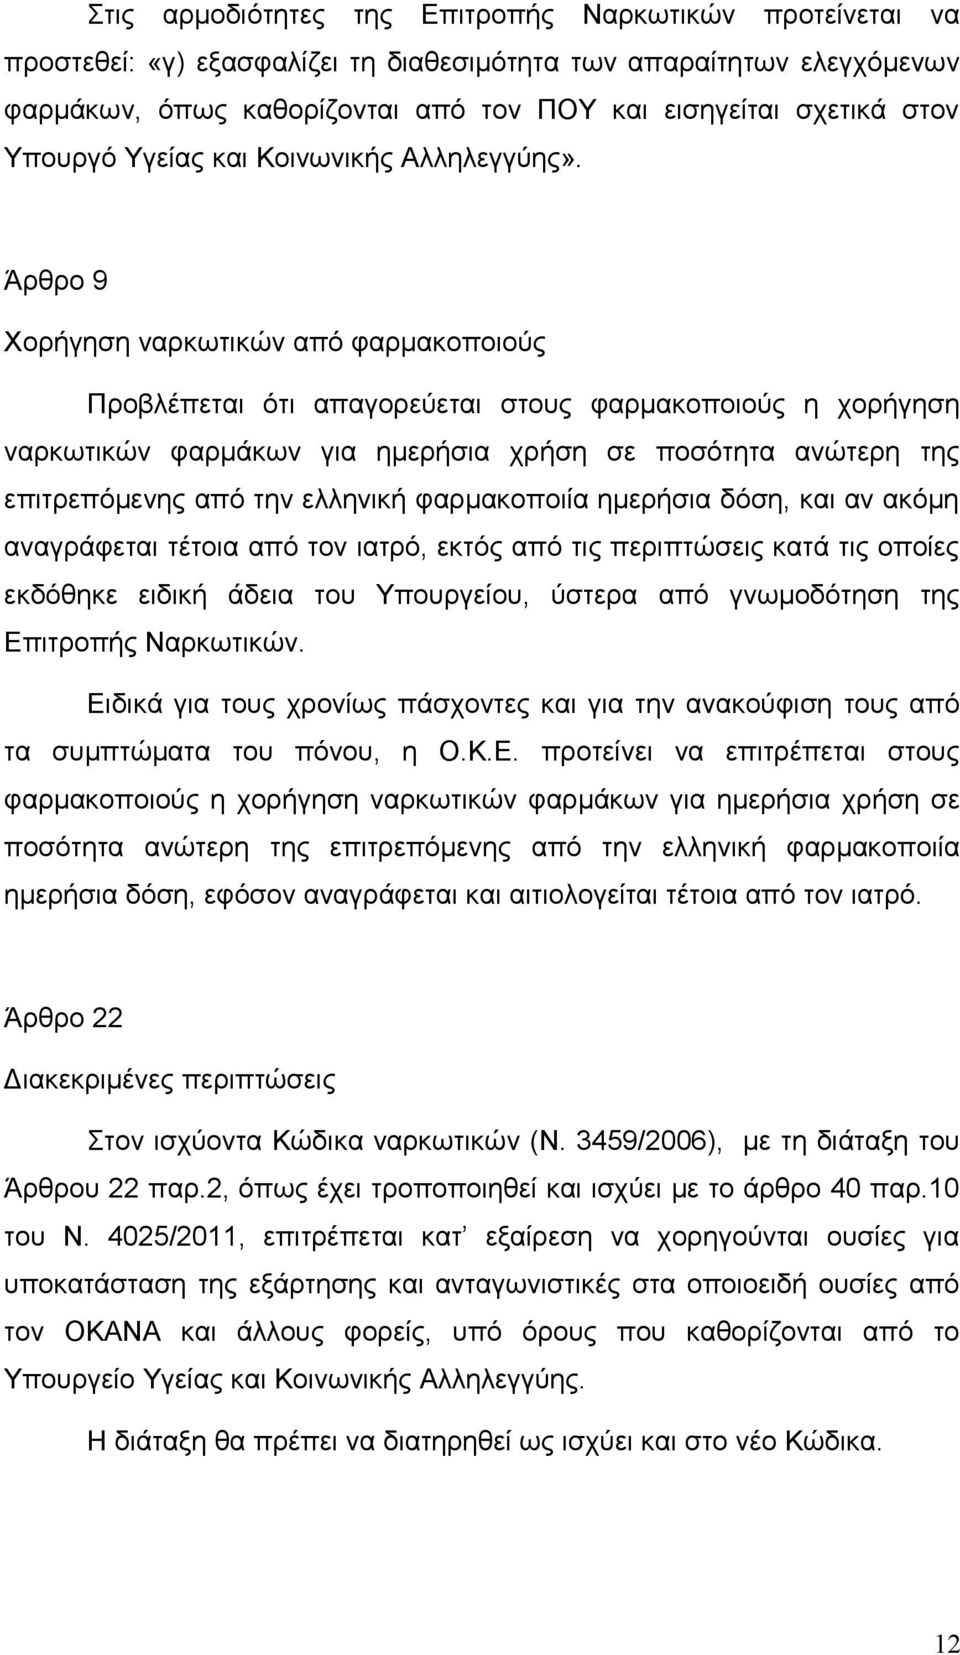 Άρθρο 9 Χορήγηση ναρκωτικών από φαρμακοποιούς Προβλέπεται ότι απαγορεύεται στους φαρμακοποιούς η χορήγηση ναρκωτικών φαρμάκων για ημερήσια χρήση σε ποσότητα ανώτερη της επιτρεπόμενης από την ελληνική